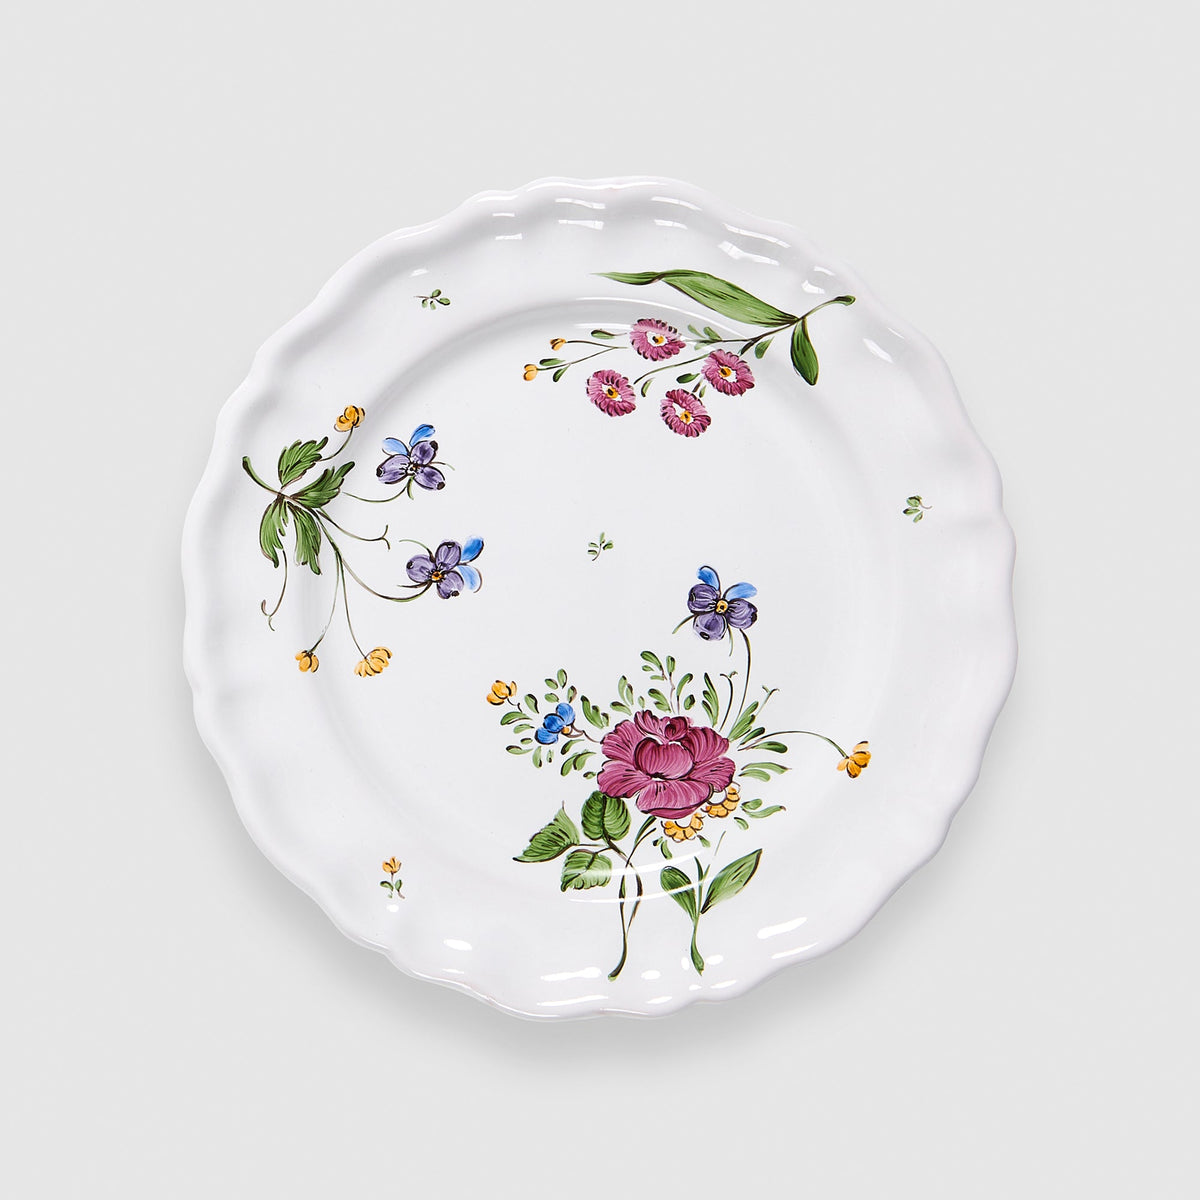 Picardie Dinner Plate in Florale